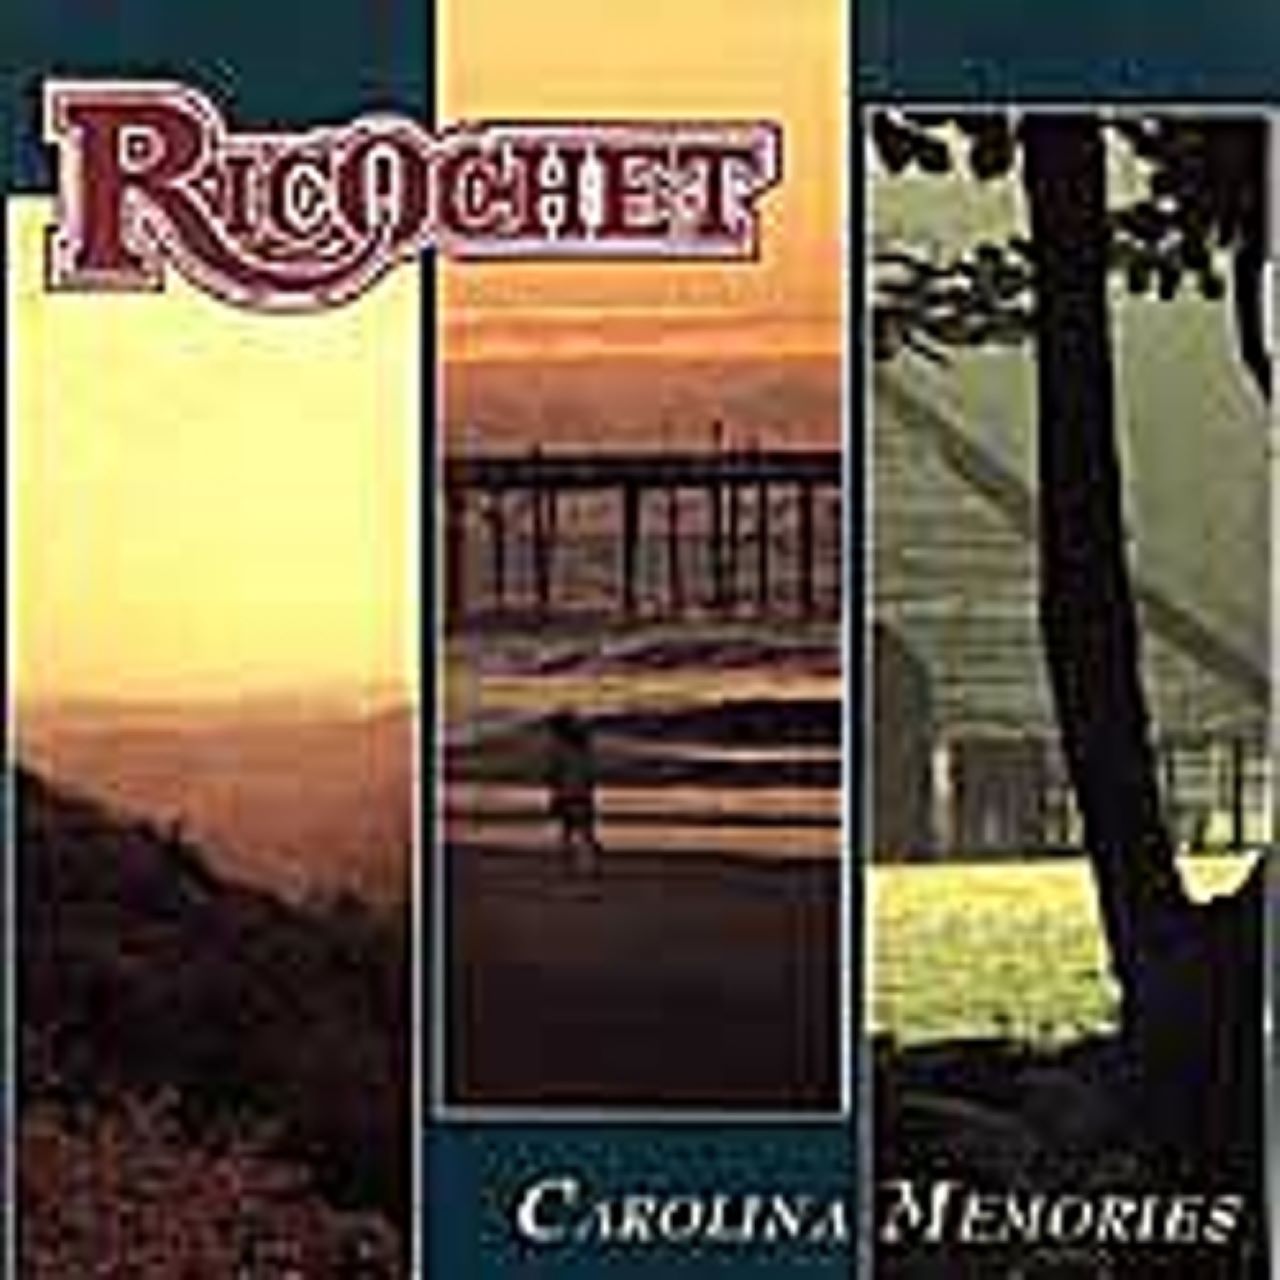 Ric-O-Chet - Carolina Memories cover album